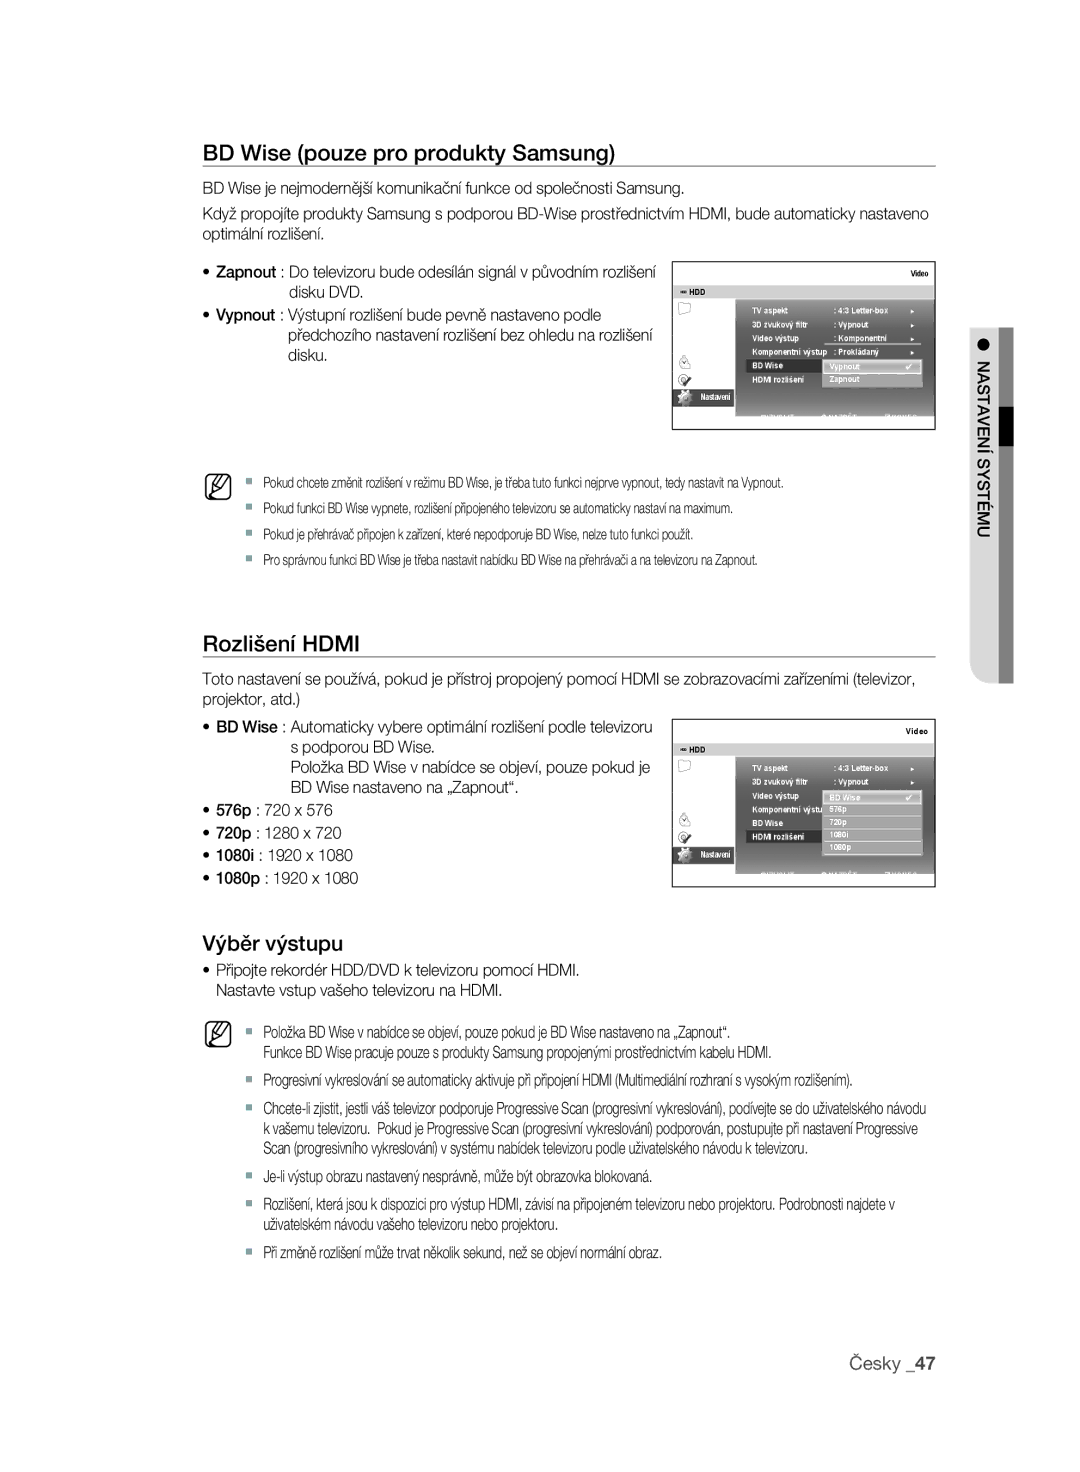 Samsung DVD-SH897/EDC, DVD-SH895/XEF manual BD Wise pouze pro produkty Samsung, Rozlišení Hdmi, Výběr výstupu, Systému 